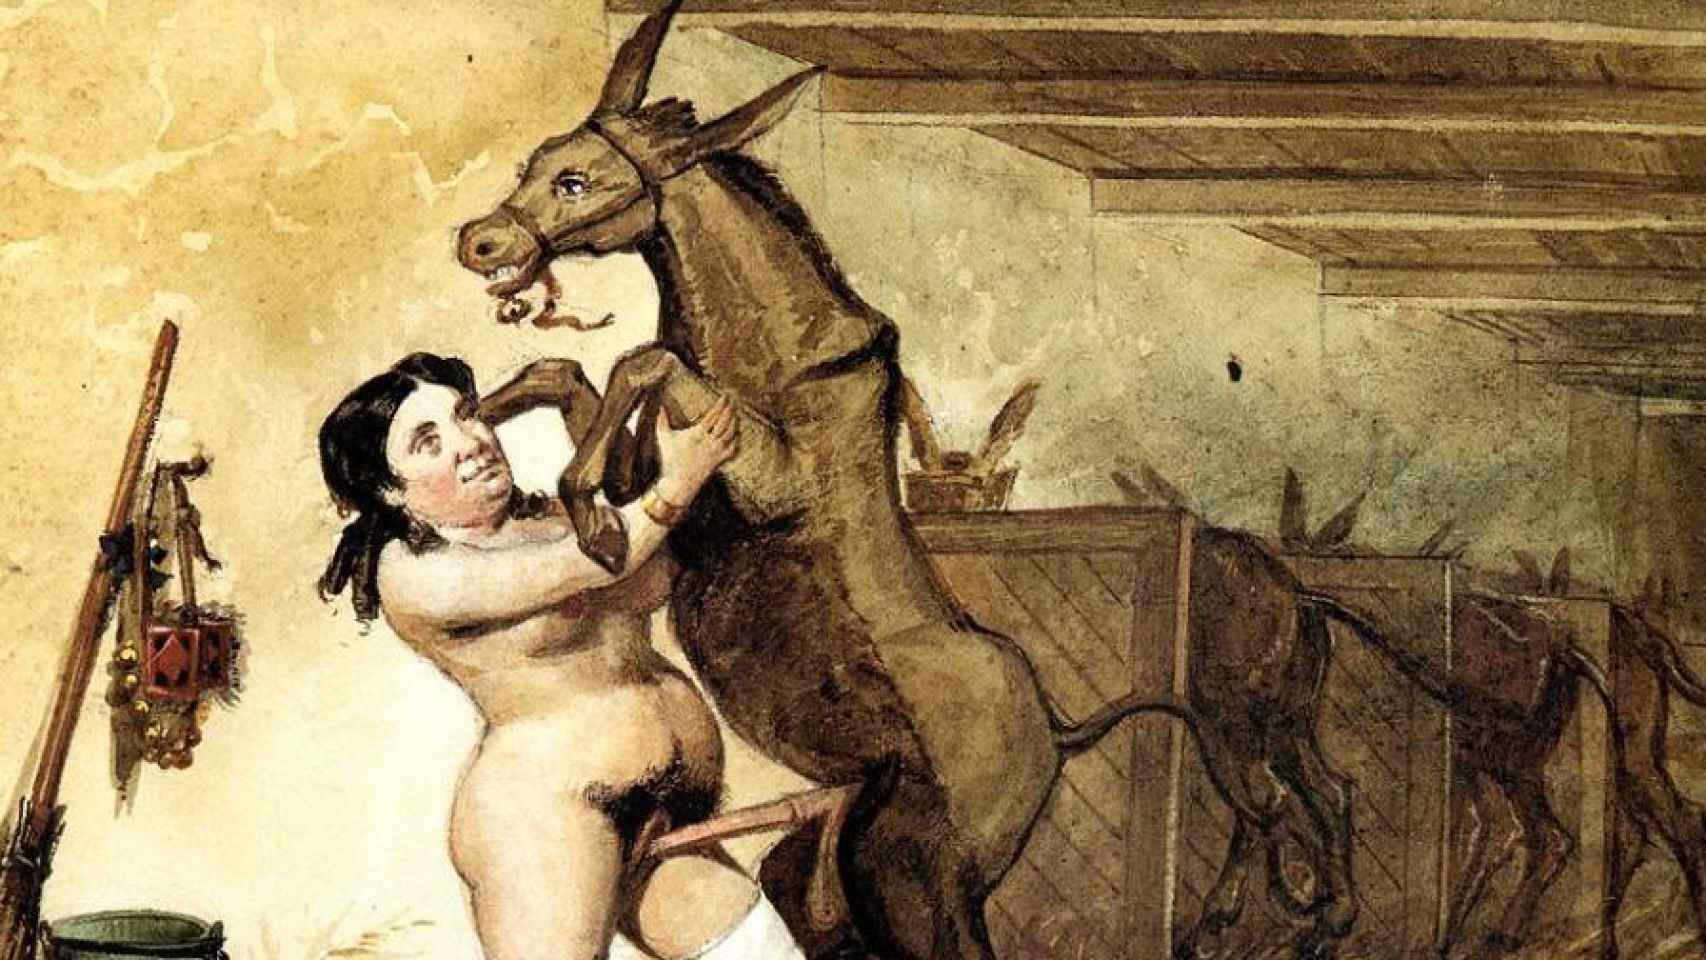 Una ilustración descarnada de 'Los Borbones en pelota', donde se ve a Isabel II copulando con un burro.